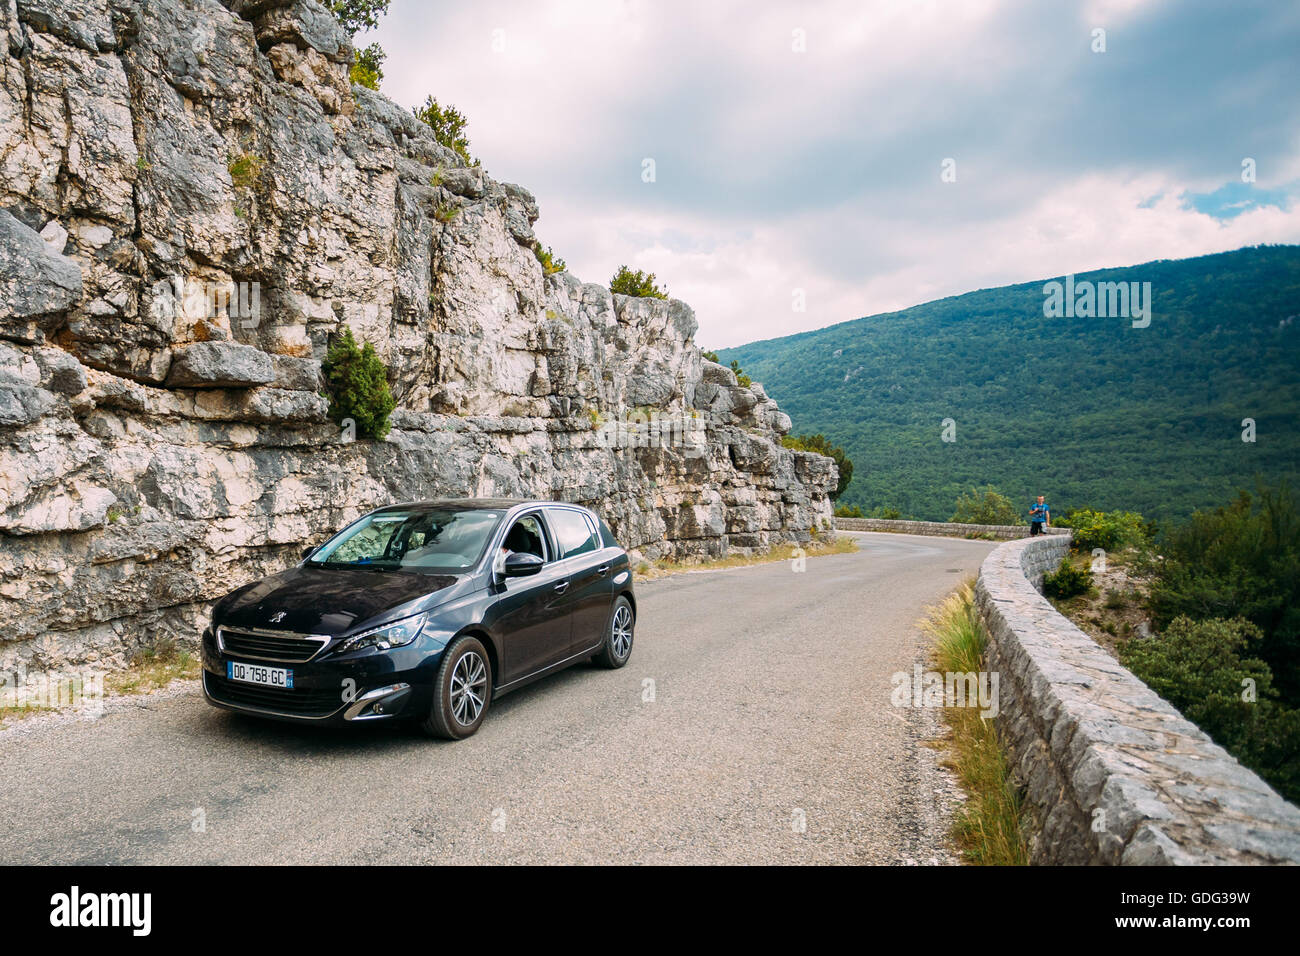 Verdon, France - le 29 juin 2015 : Noir Couleur Peugeot 308 5 portes voiture sur fond de montagne nature paysage. La Peuge Banque D'Images